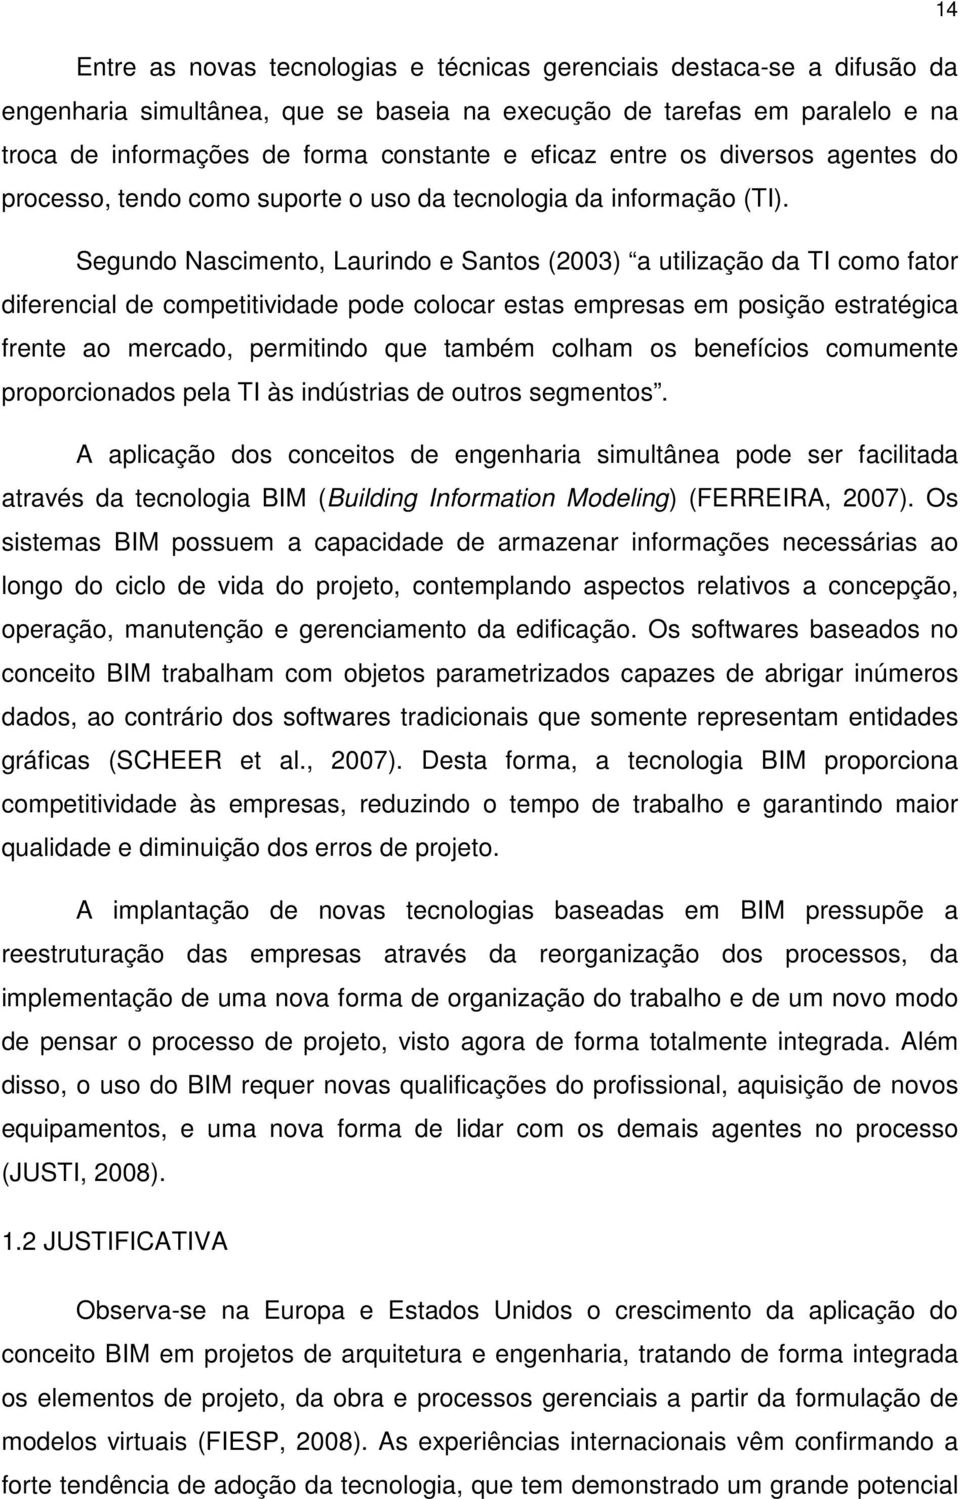 Segundo Nascimento, Laurindo e Santos (2003) a utilização da TI como fator diferencial de competitividade pode colocar estas empresas em posição estratégica frente ao mercado, permitindo que também